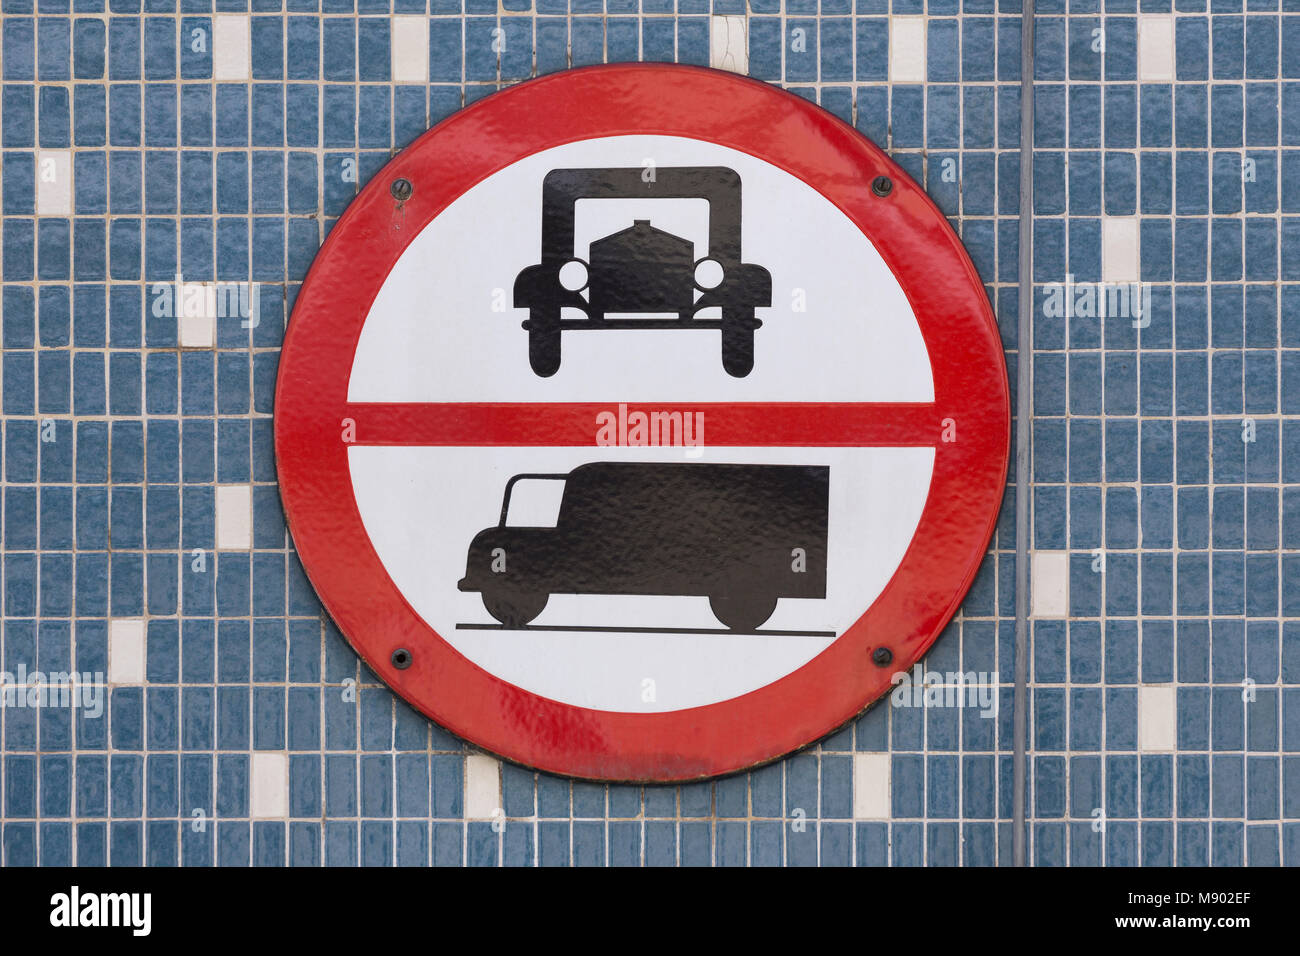 Vienne, Autriche. Un panneau de circulation qui interdit le passage des voitures et des camions. Inscrivez-ronde avec contour rouge. Symboles à l'ancienne pour voiture et camion. Banque D'Images